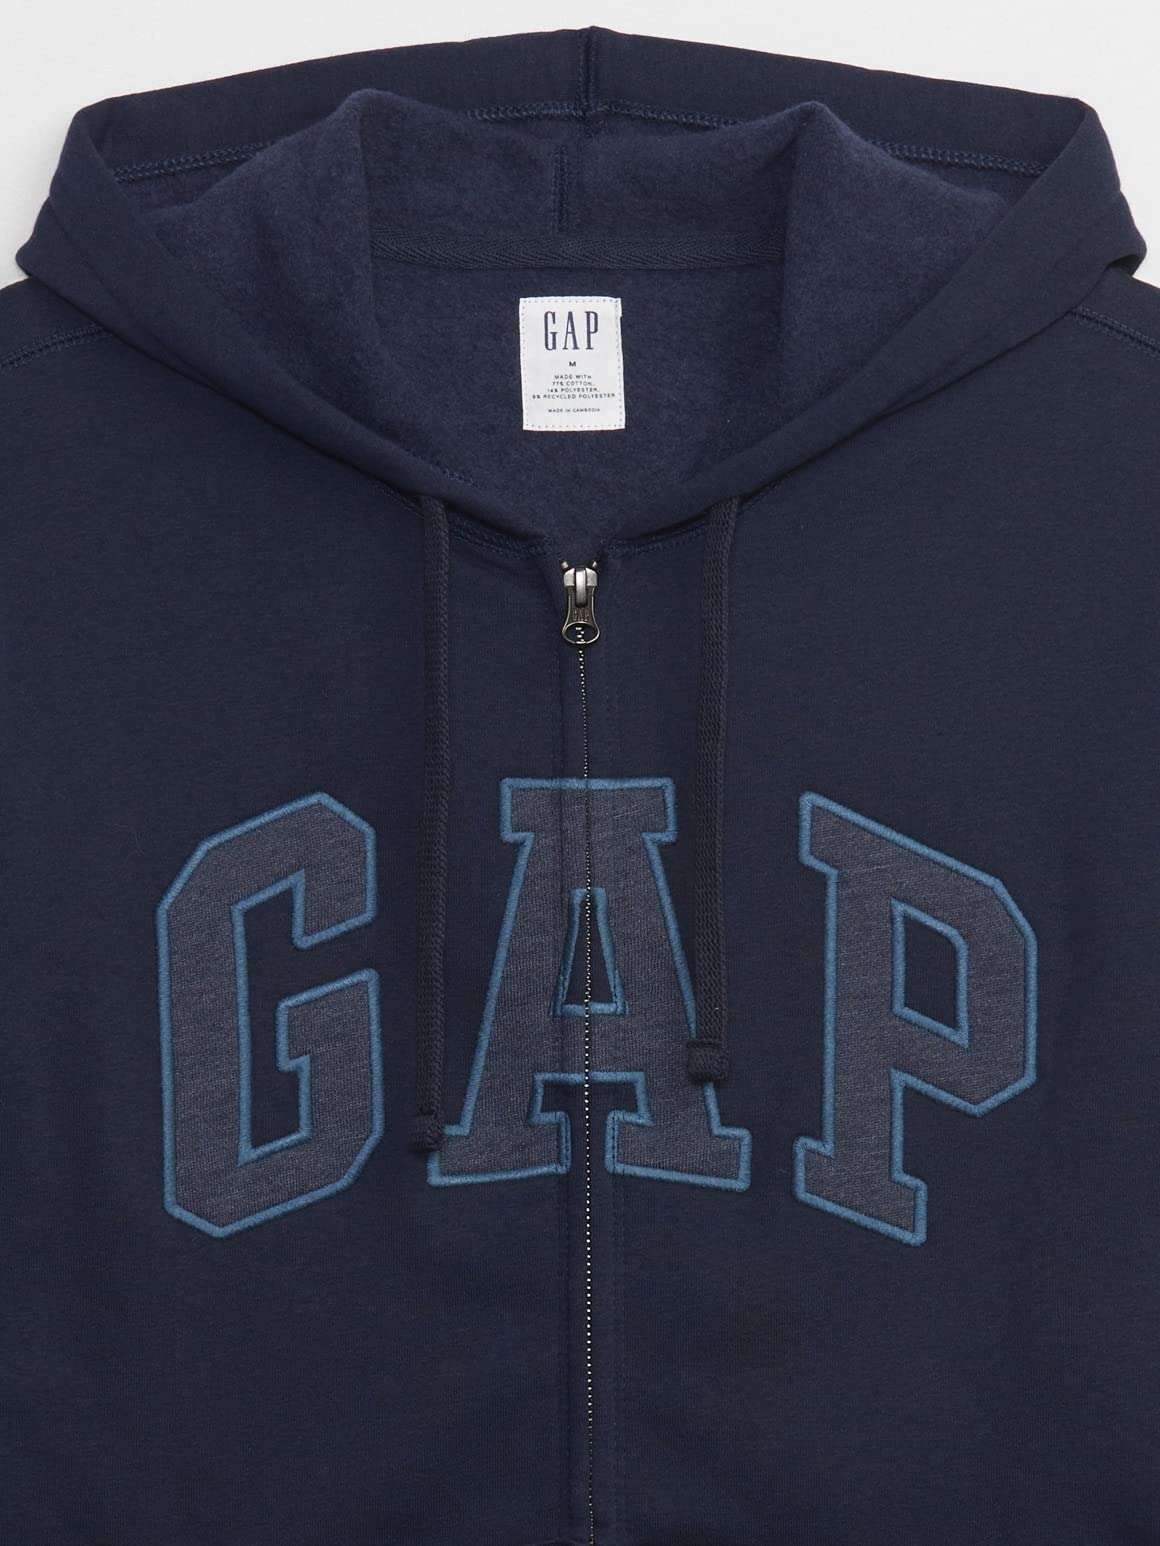 GAP Men's Logo Hoodie Hooded Full Zip Sweatshirt